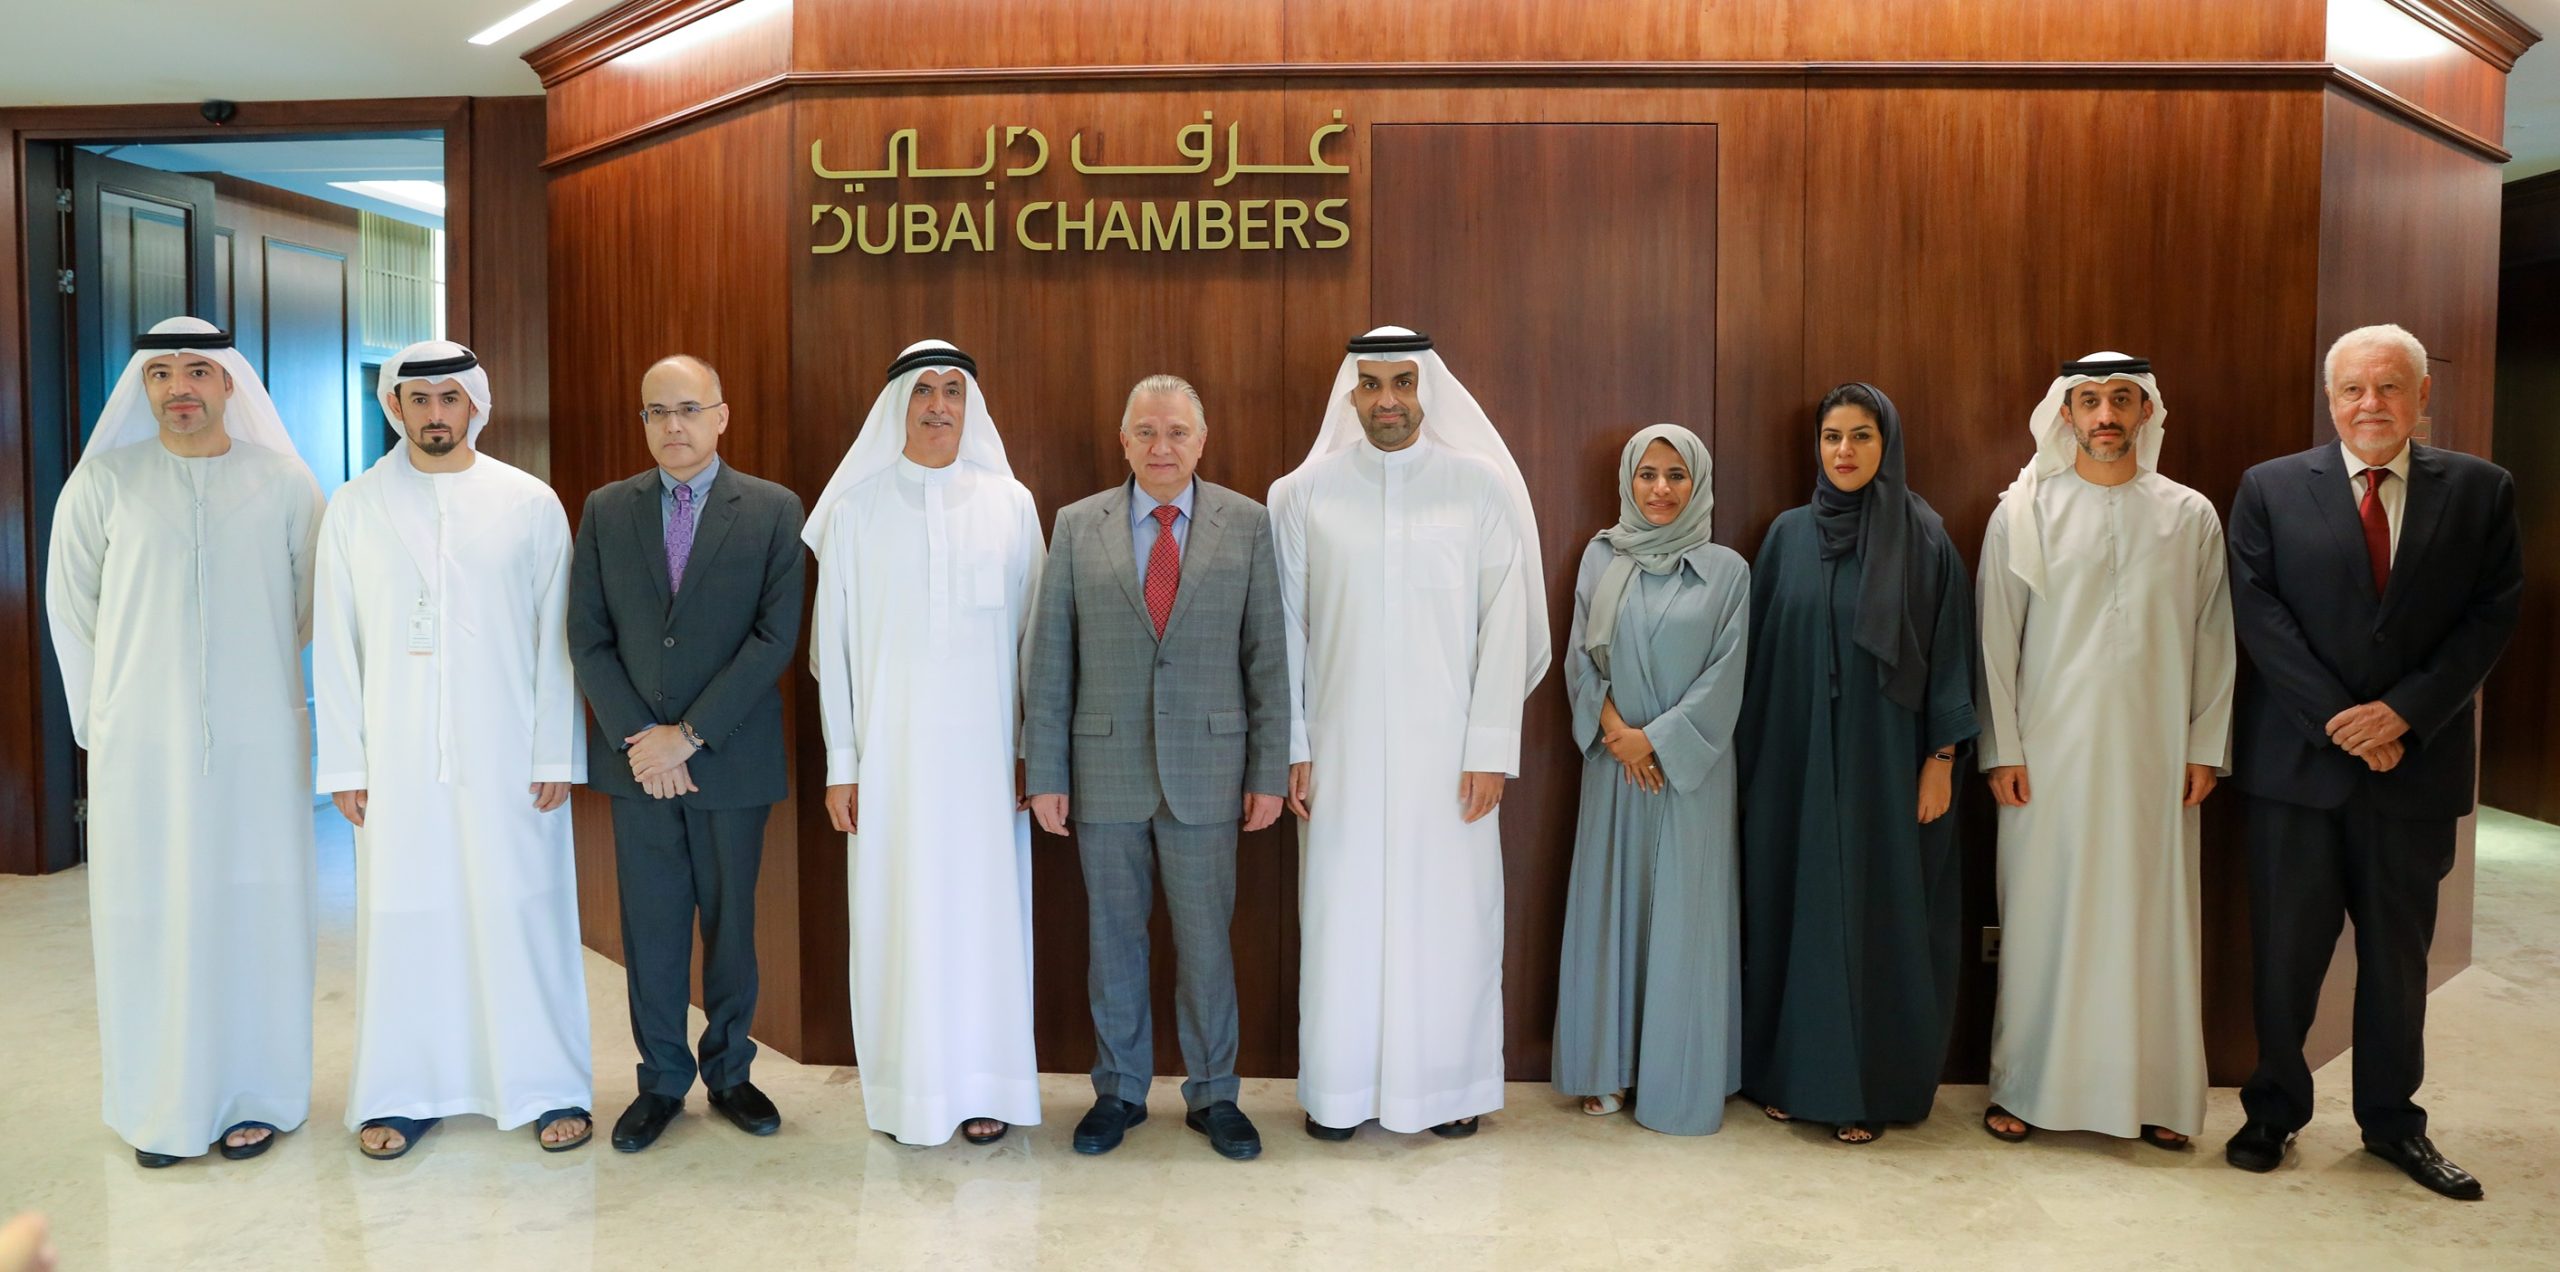 غرفة تجارة دبي تعلن تأسيس مجلس الأعمال الكوستاريكي لتعزيز الروابط التجارية والعلاقات الاقتصادية الثنائية